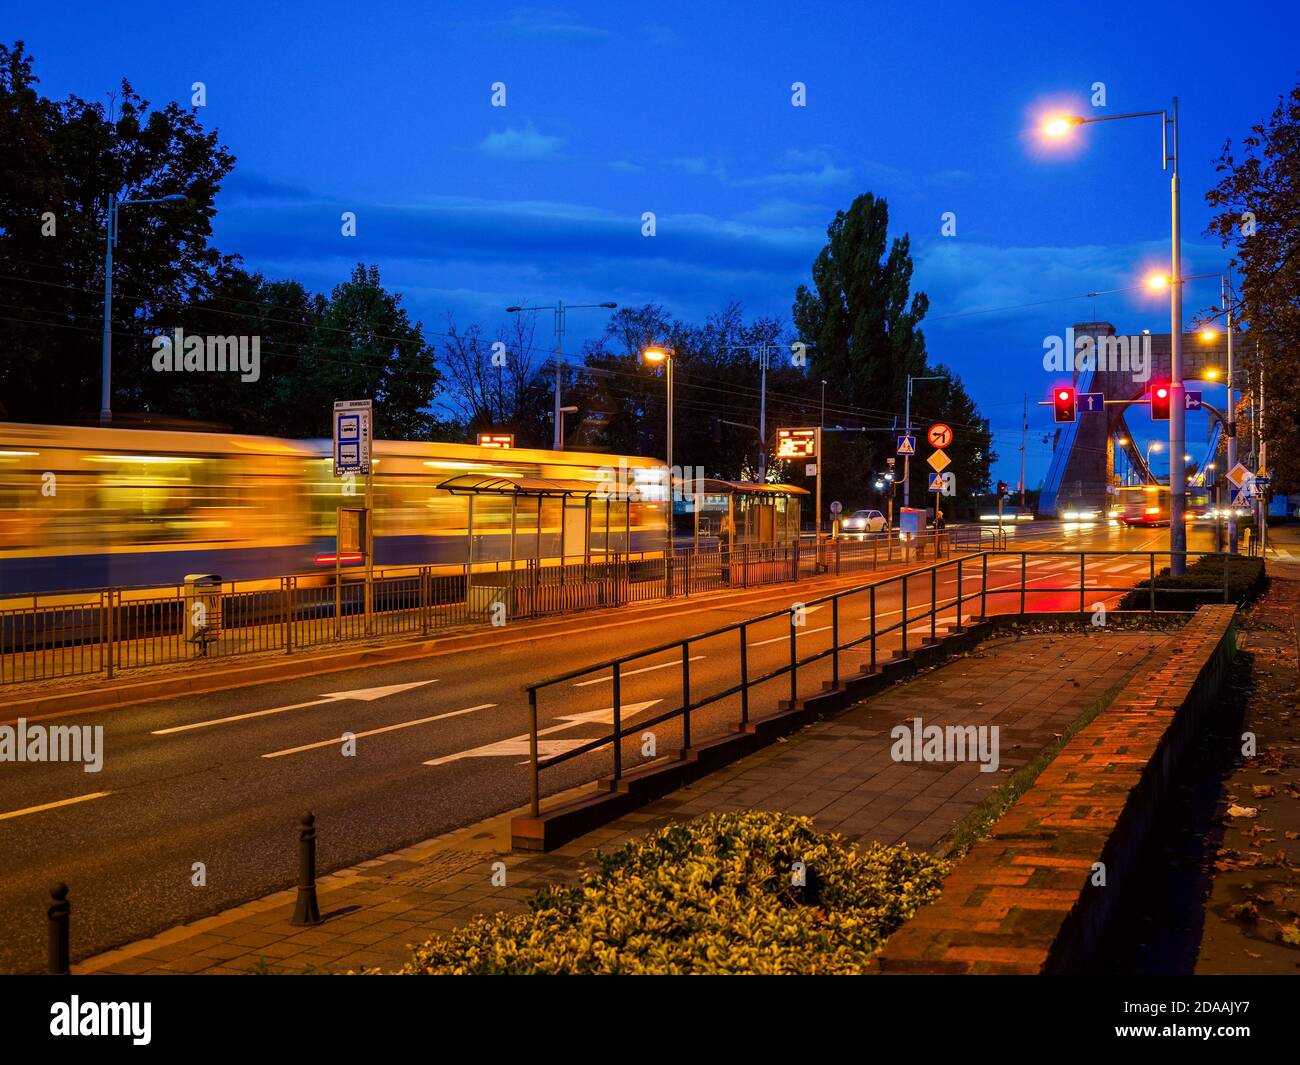 Tráfico nocturno en una ciudad. Vida urbana, Transporte público Foto de stock